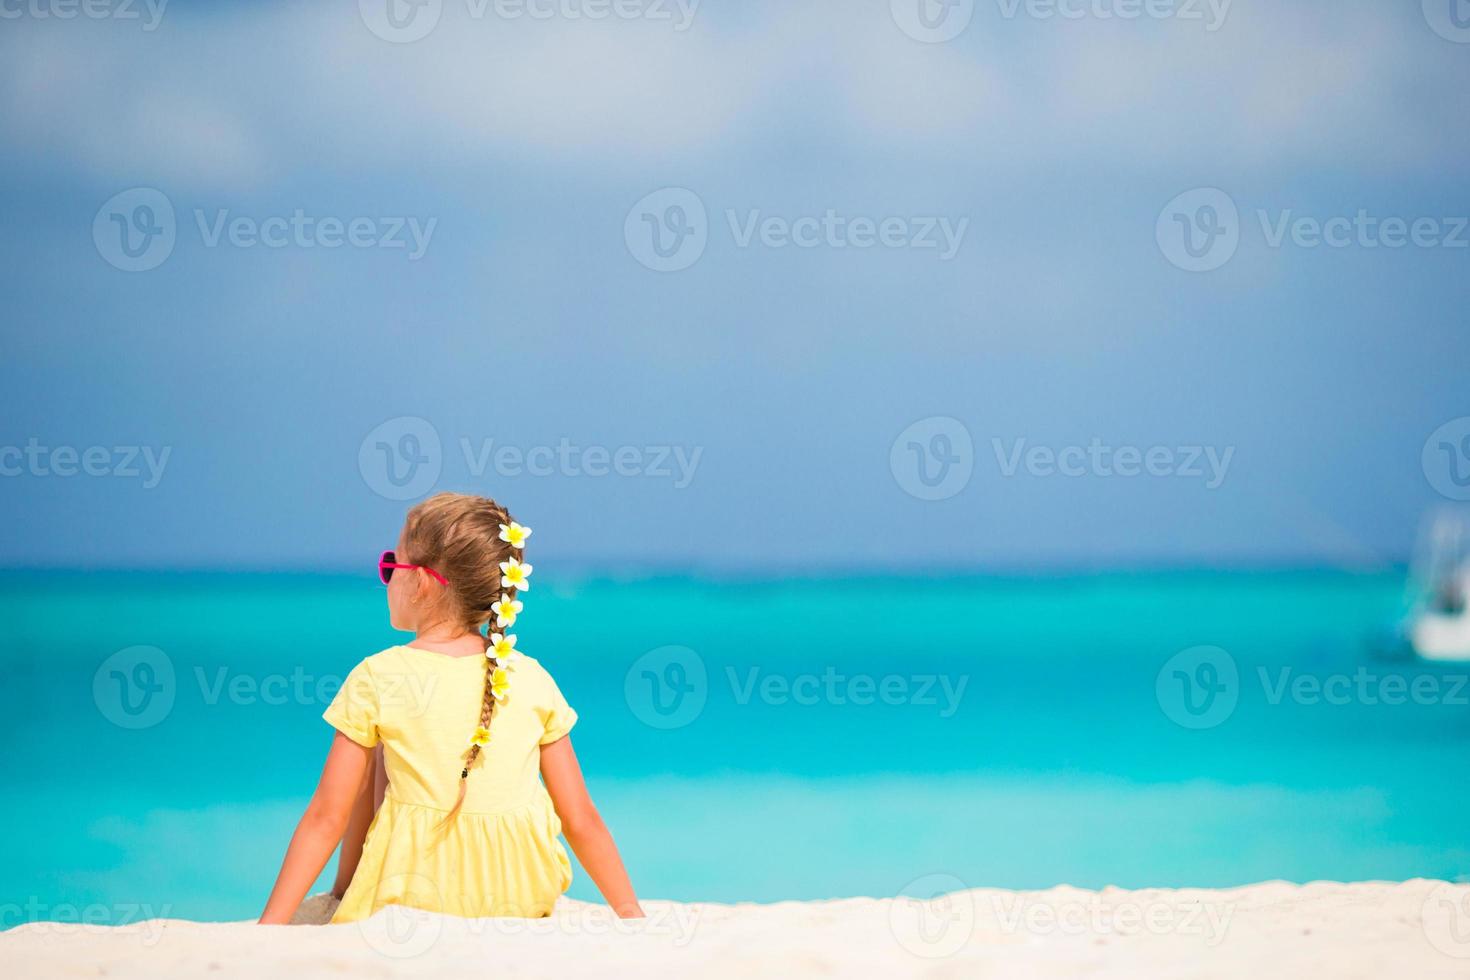 adorable niña con flores frangipani en peinado en la playa foto